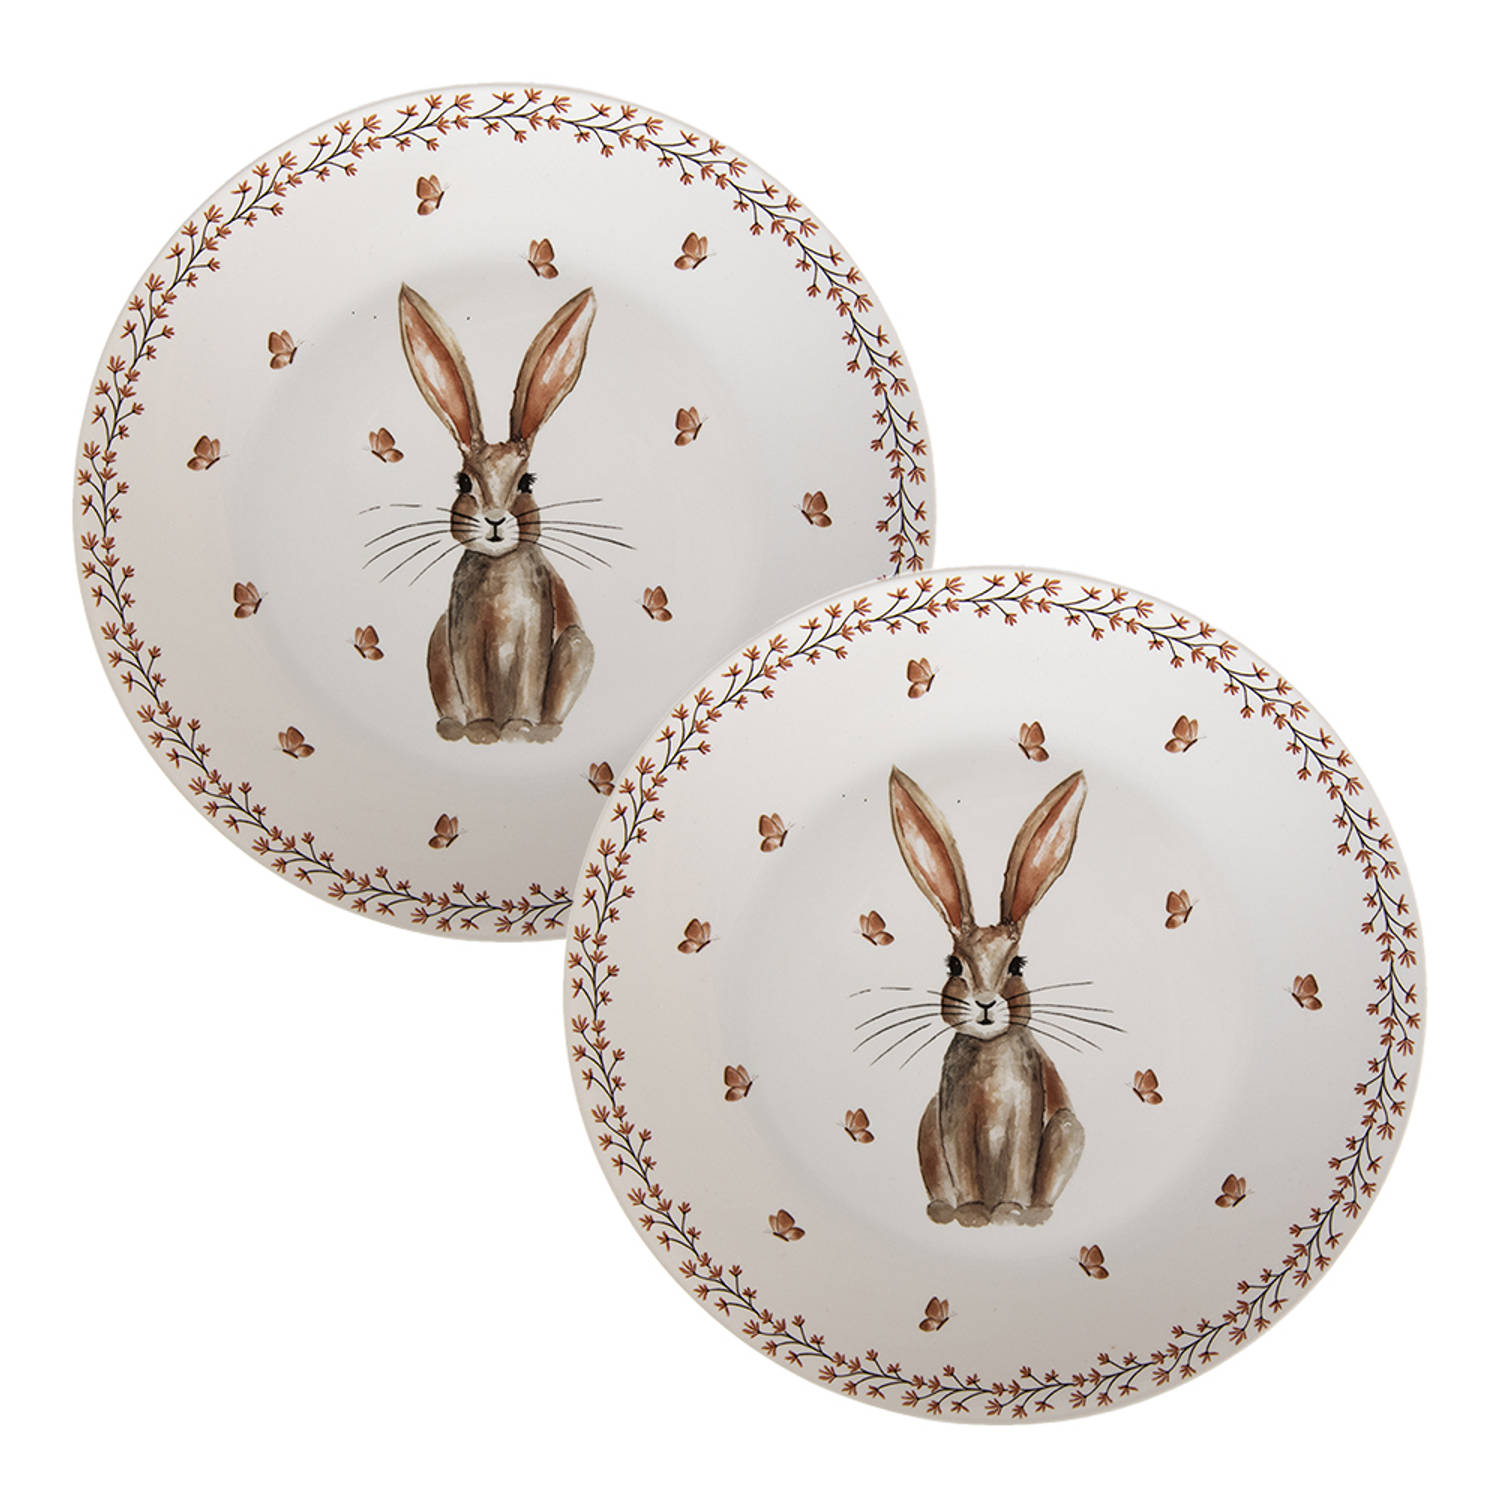 HAES DECO - Dinerborden set van 2 - Formaat Ø 26x2 cm - kleuren Bruin|Wit - Bedrukt Porselein - Collectie: Rustic Easter Bunny - Servies, grote borden